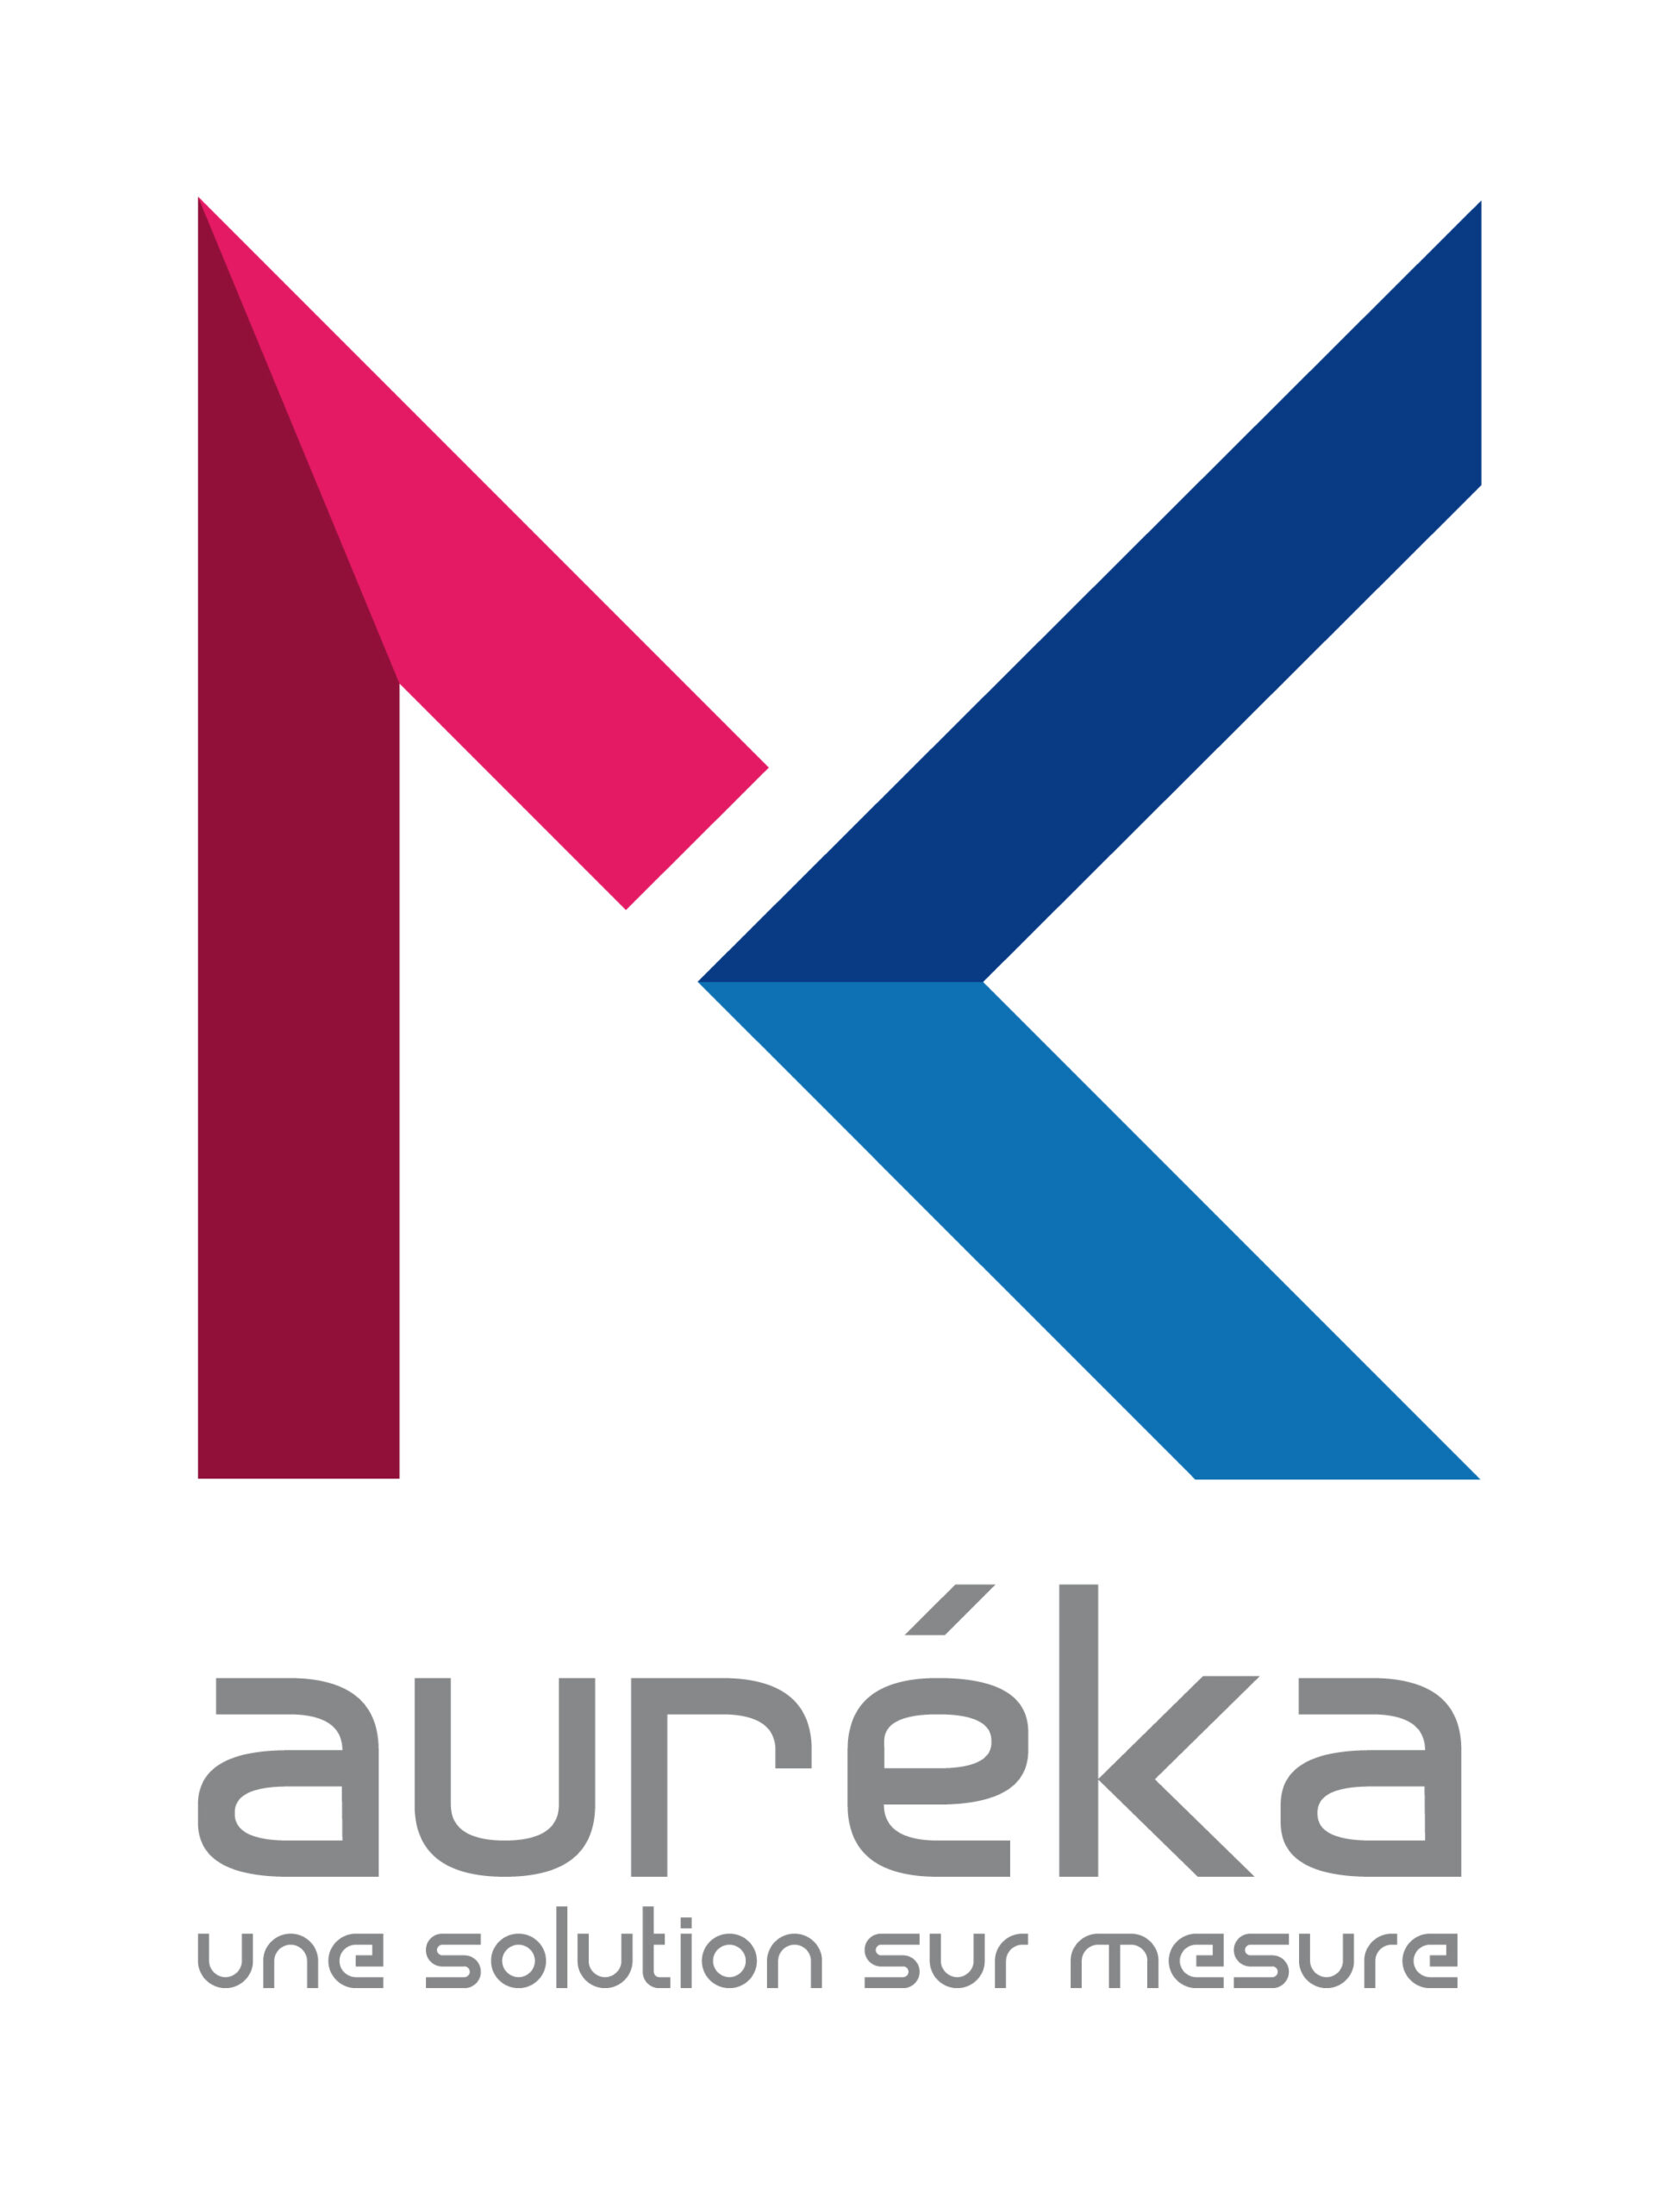 Aureka